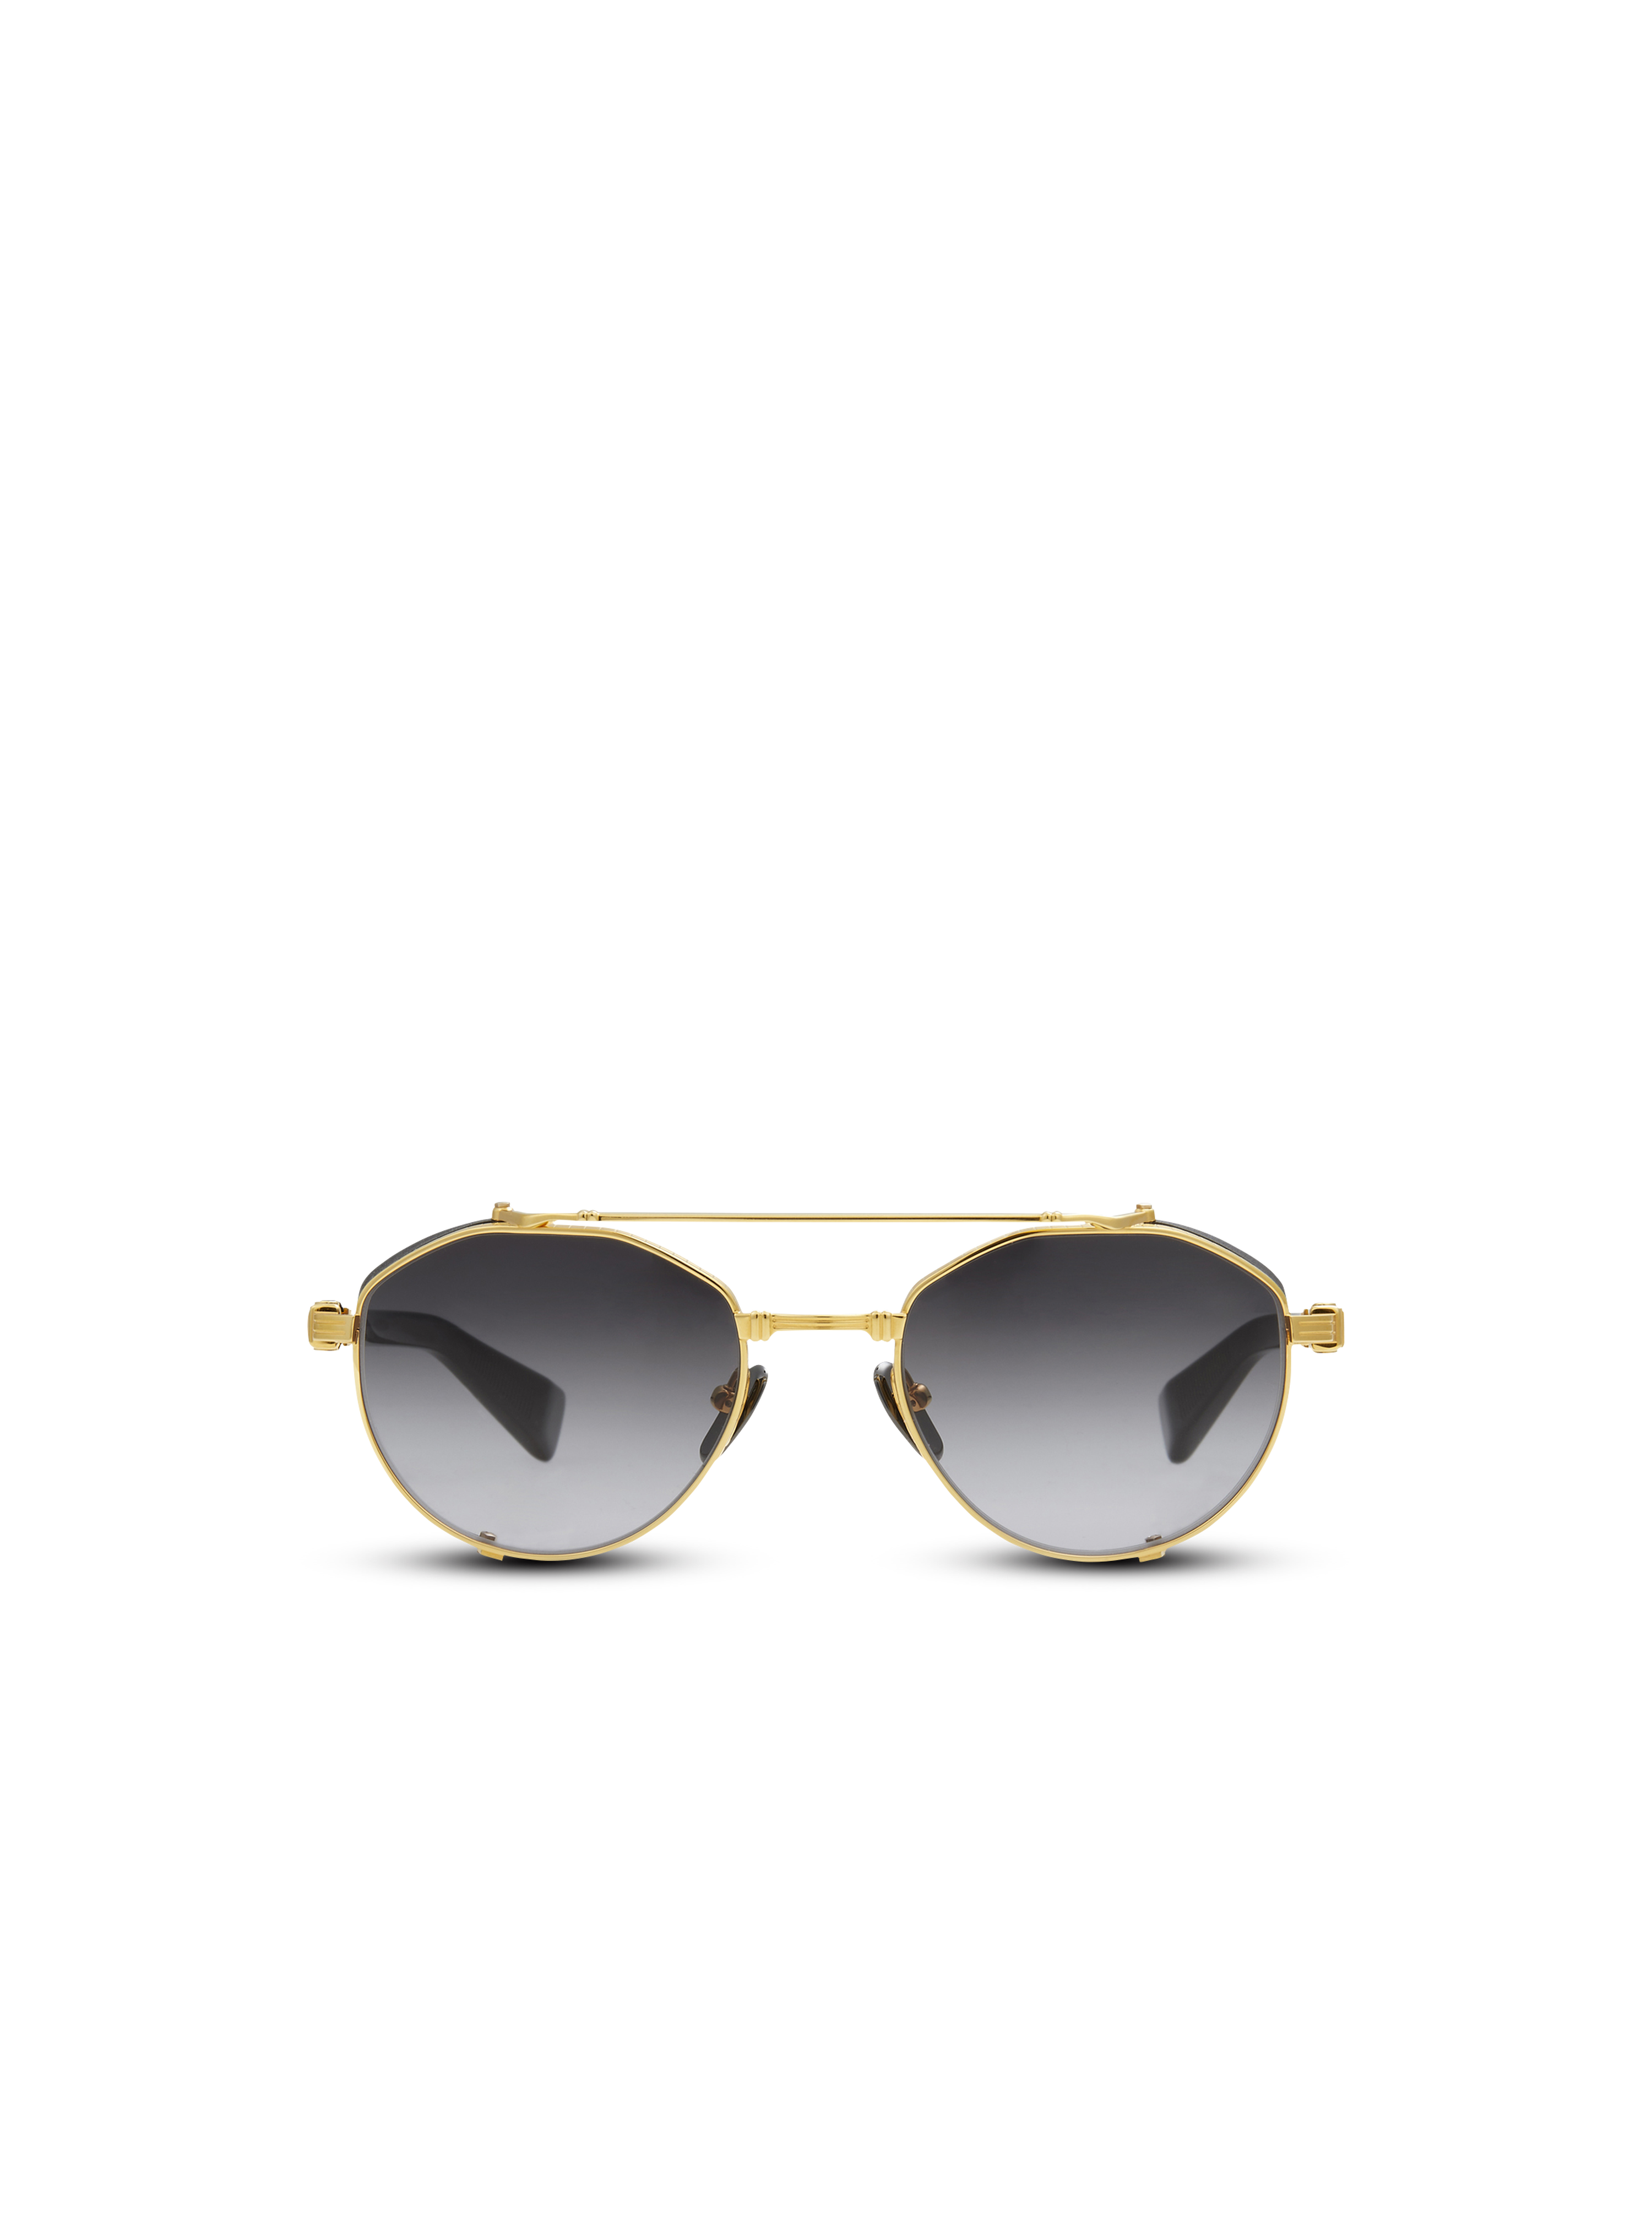 Brigade IV sunglasses, gold